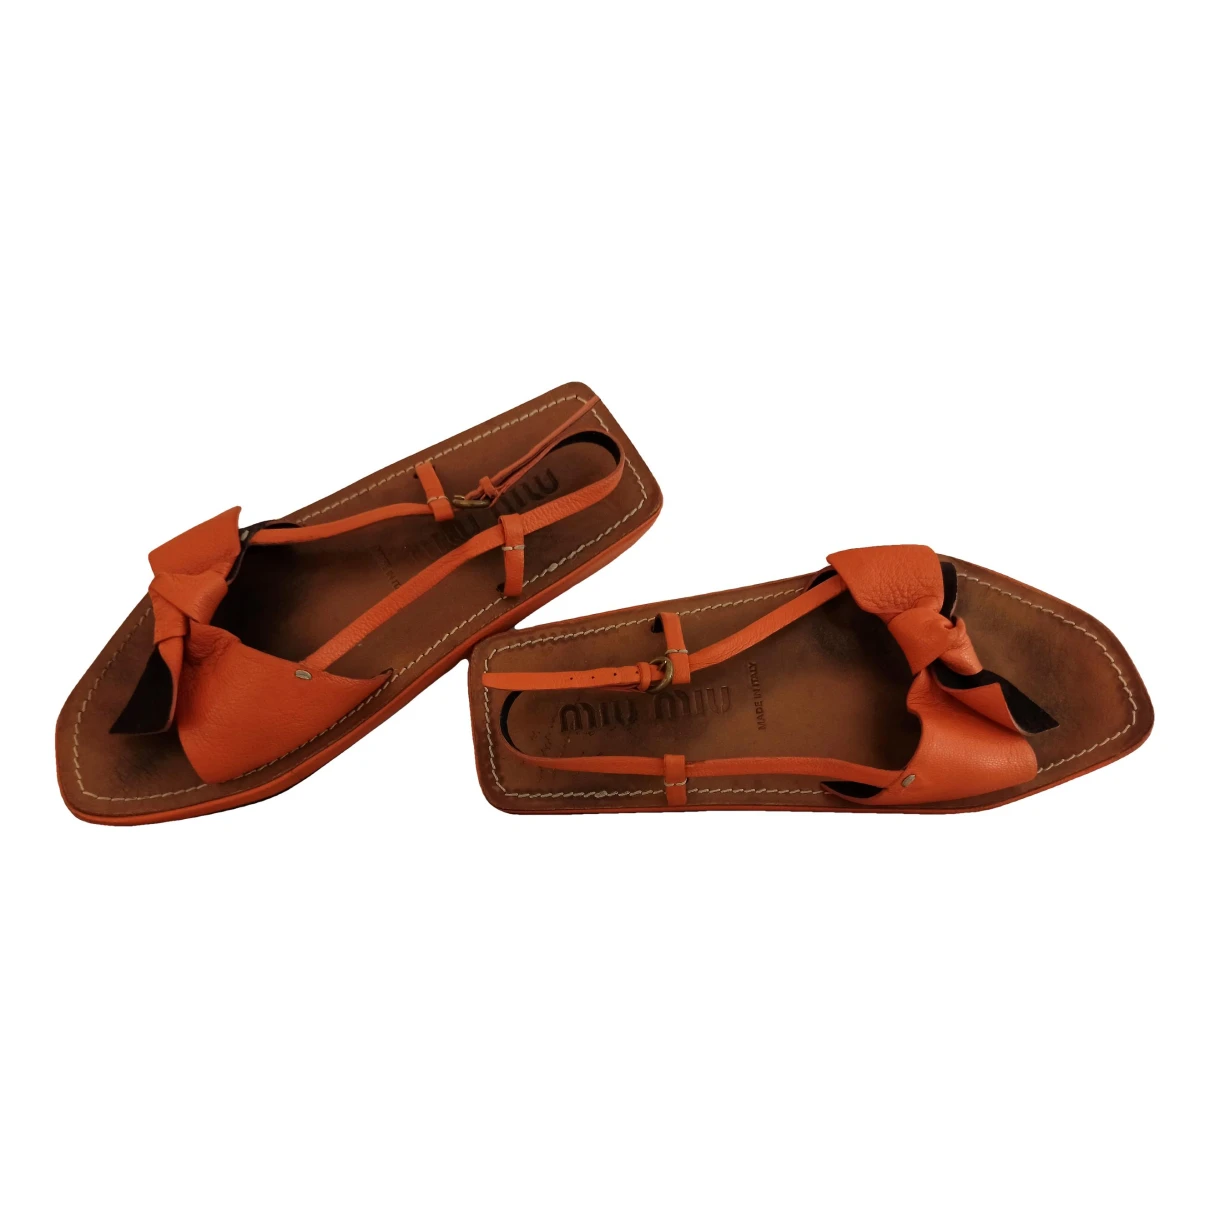 Pre-owned Miu Miu Leather Sandal In Orange